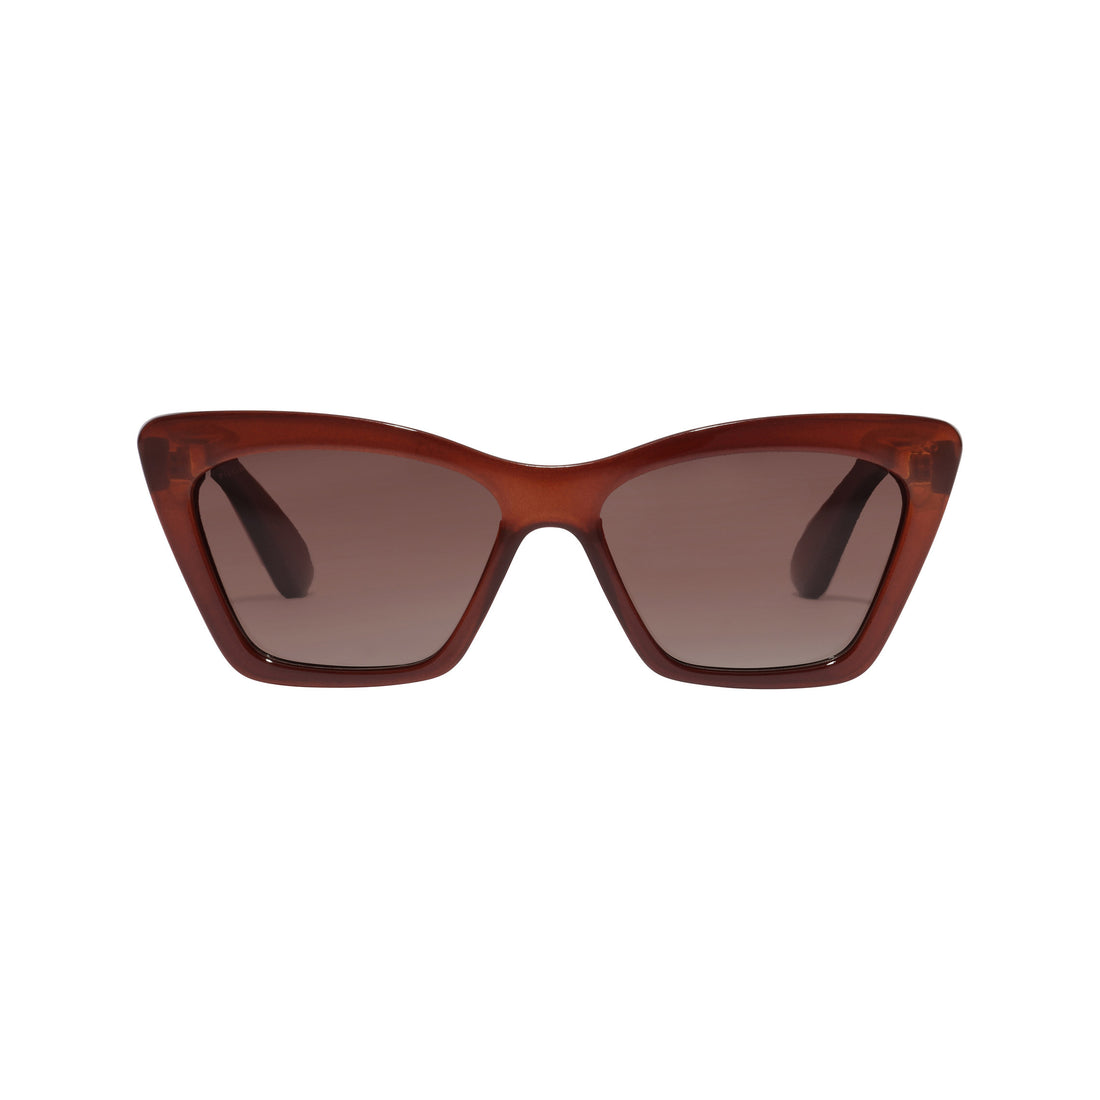 DAKOTA angular cat-eye shaped sunglasses brown - PILGRIM